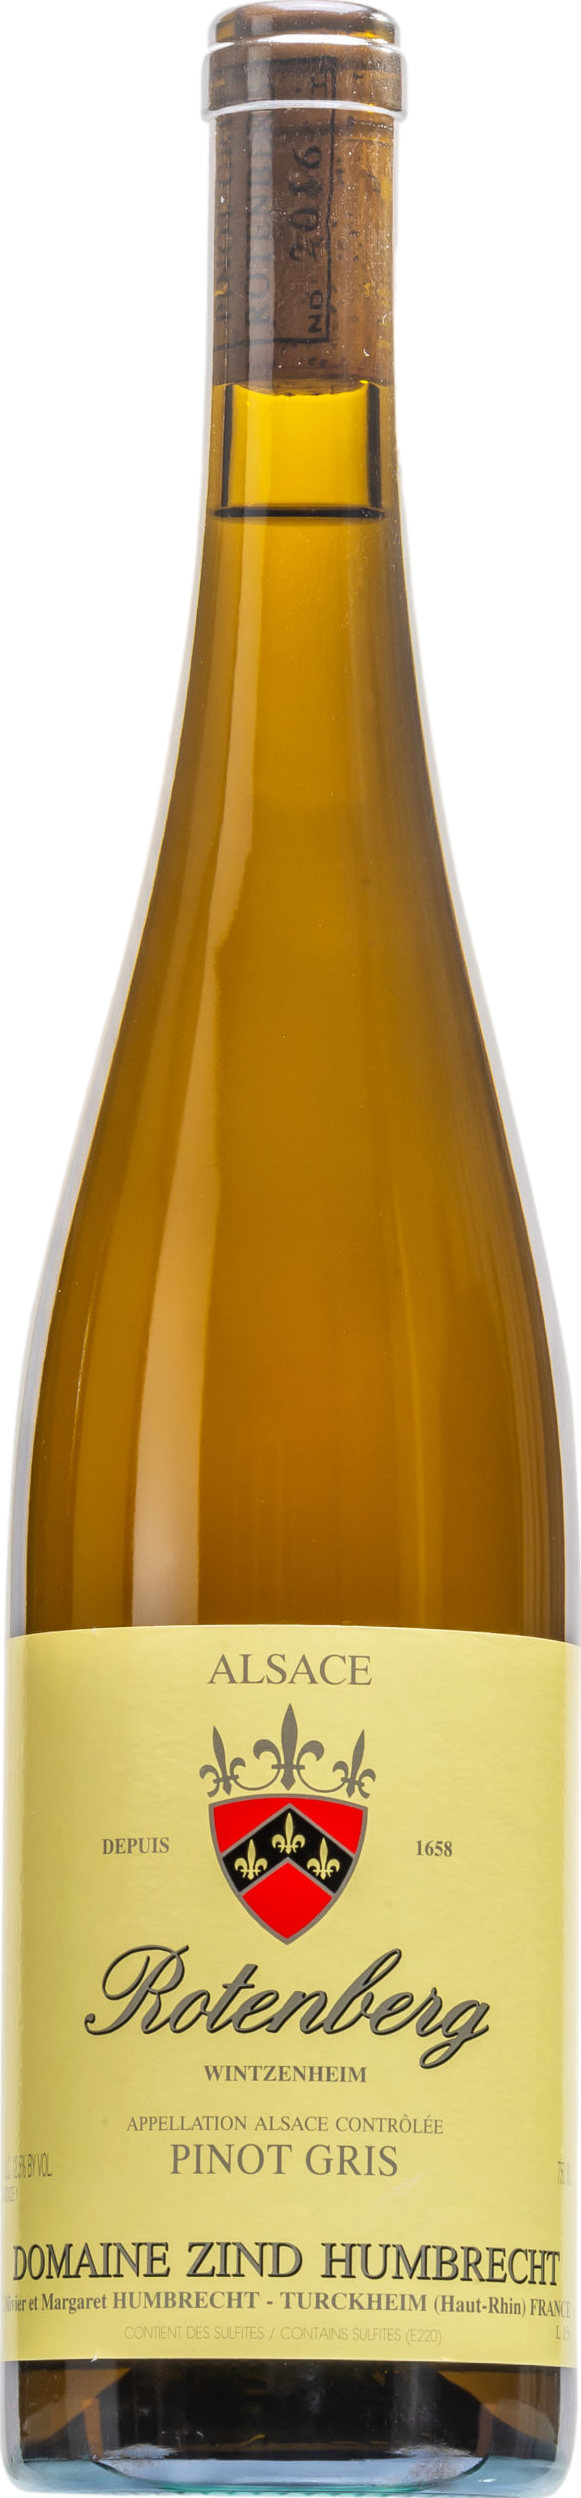 Domaine Zind-Humbrecht Pinot Gris Rotenberg 2020